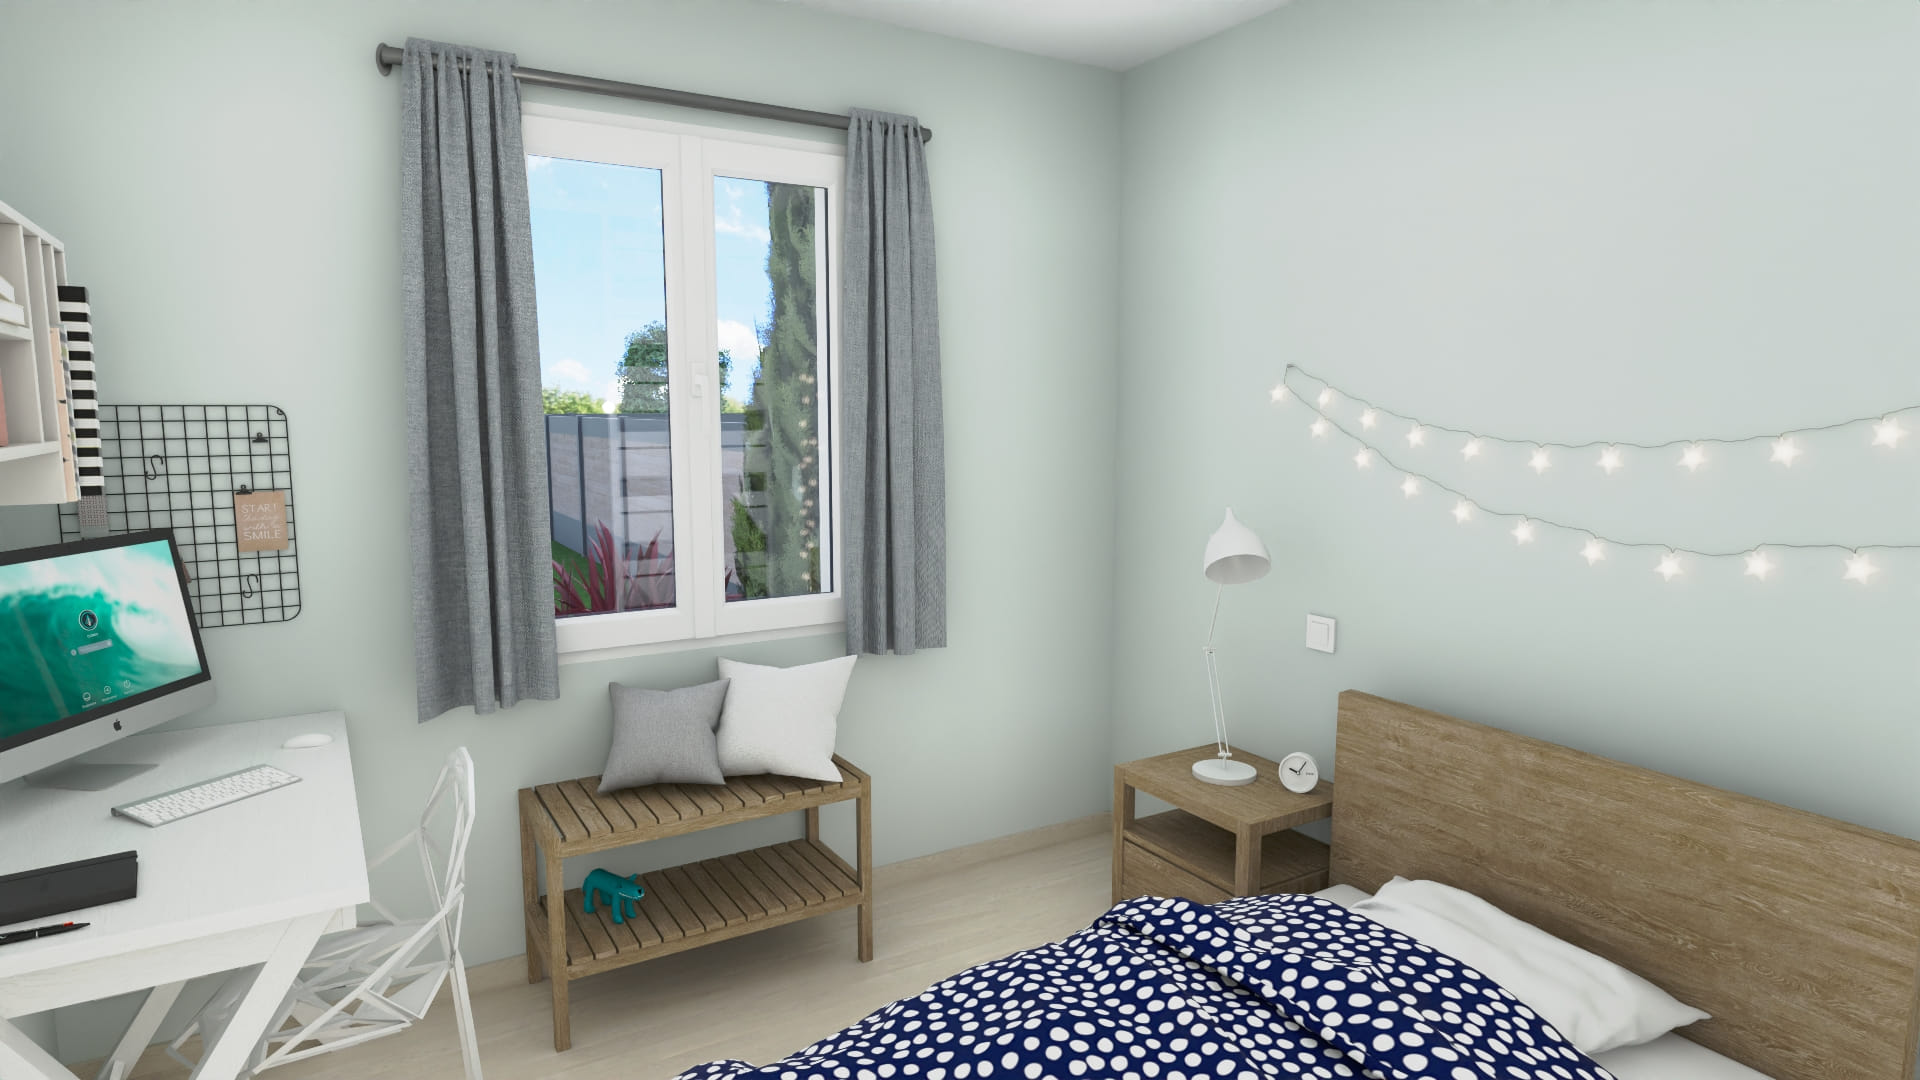 Chambre moderne lumineuse décorée avec style et confort